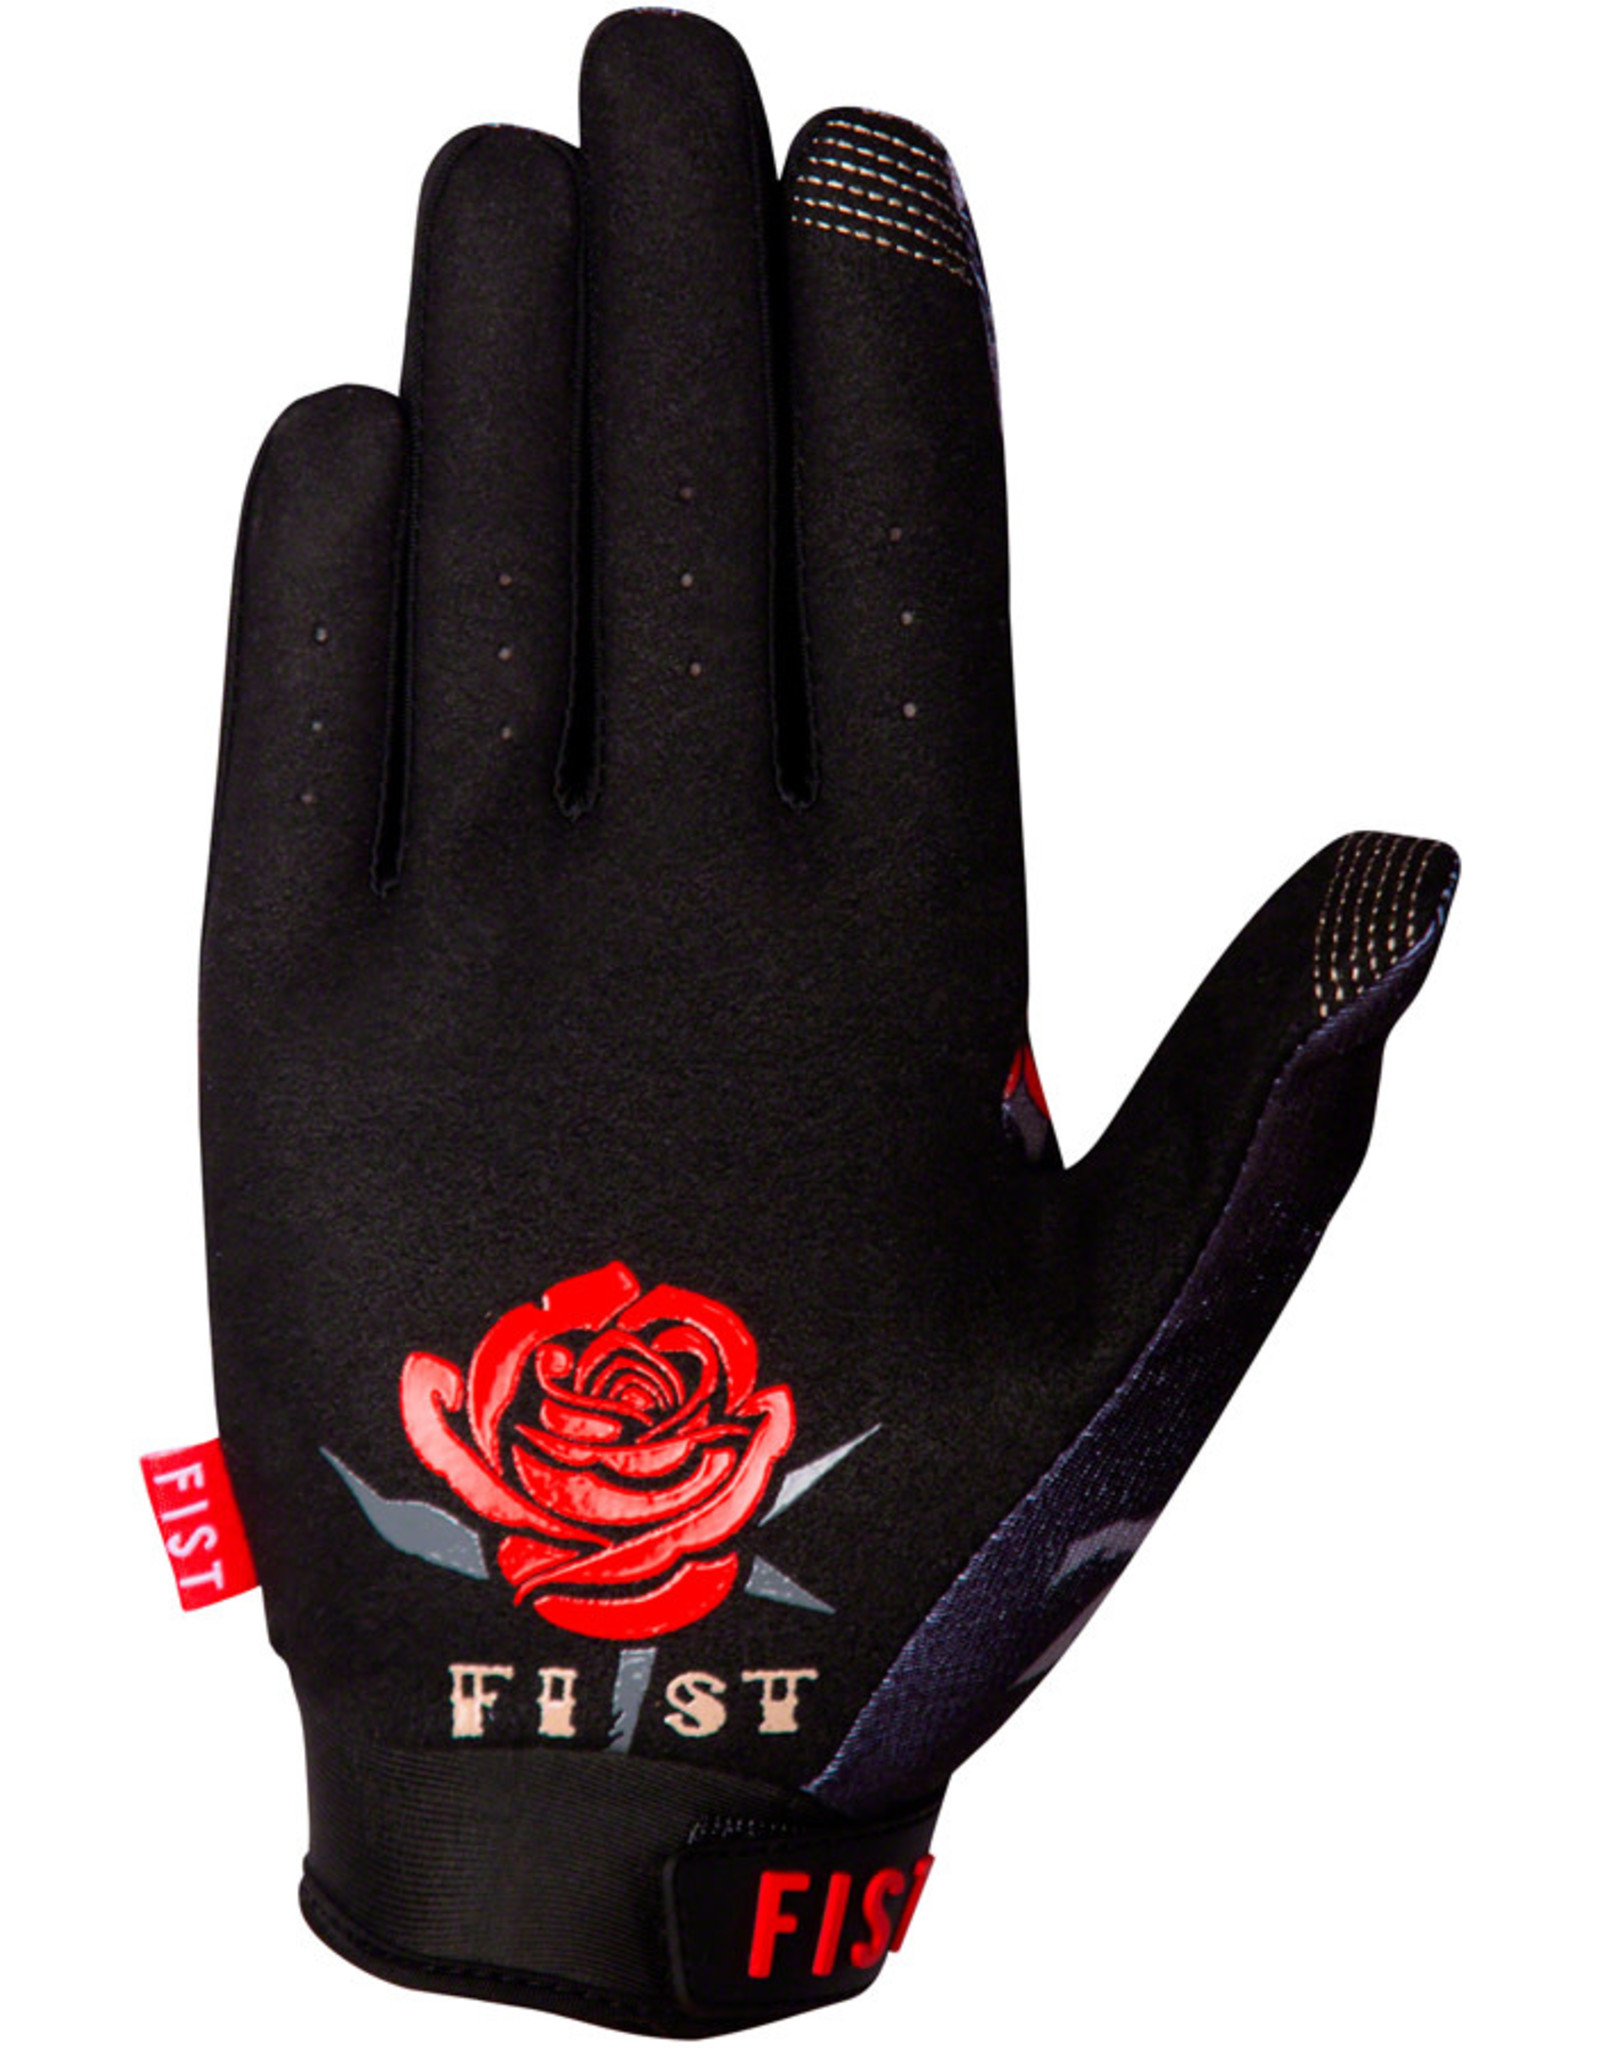 Fist Handwear Fist Handwear Matty Whyatt Roses Thorns Gloves